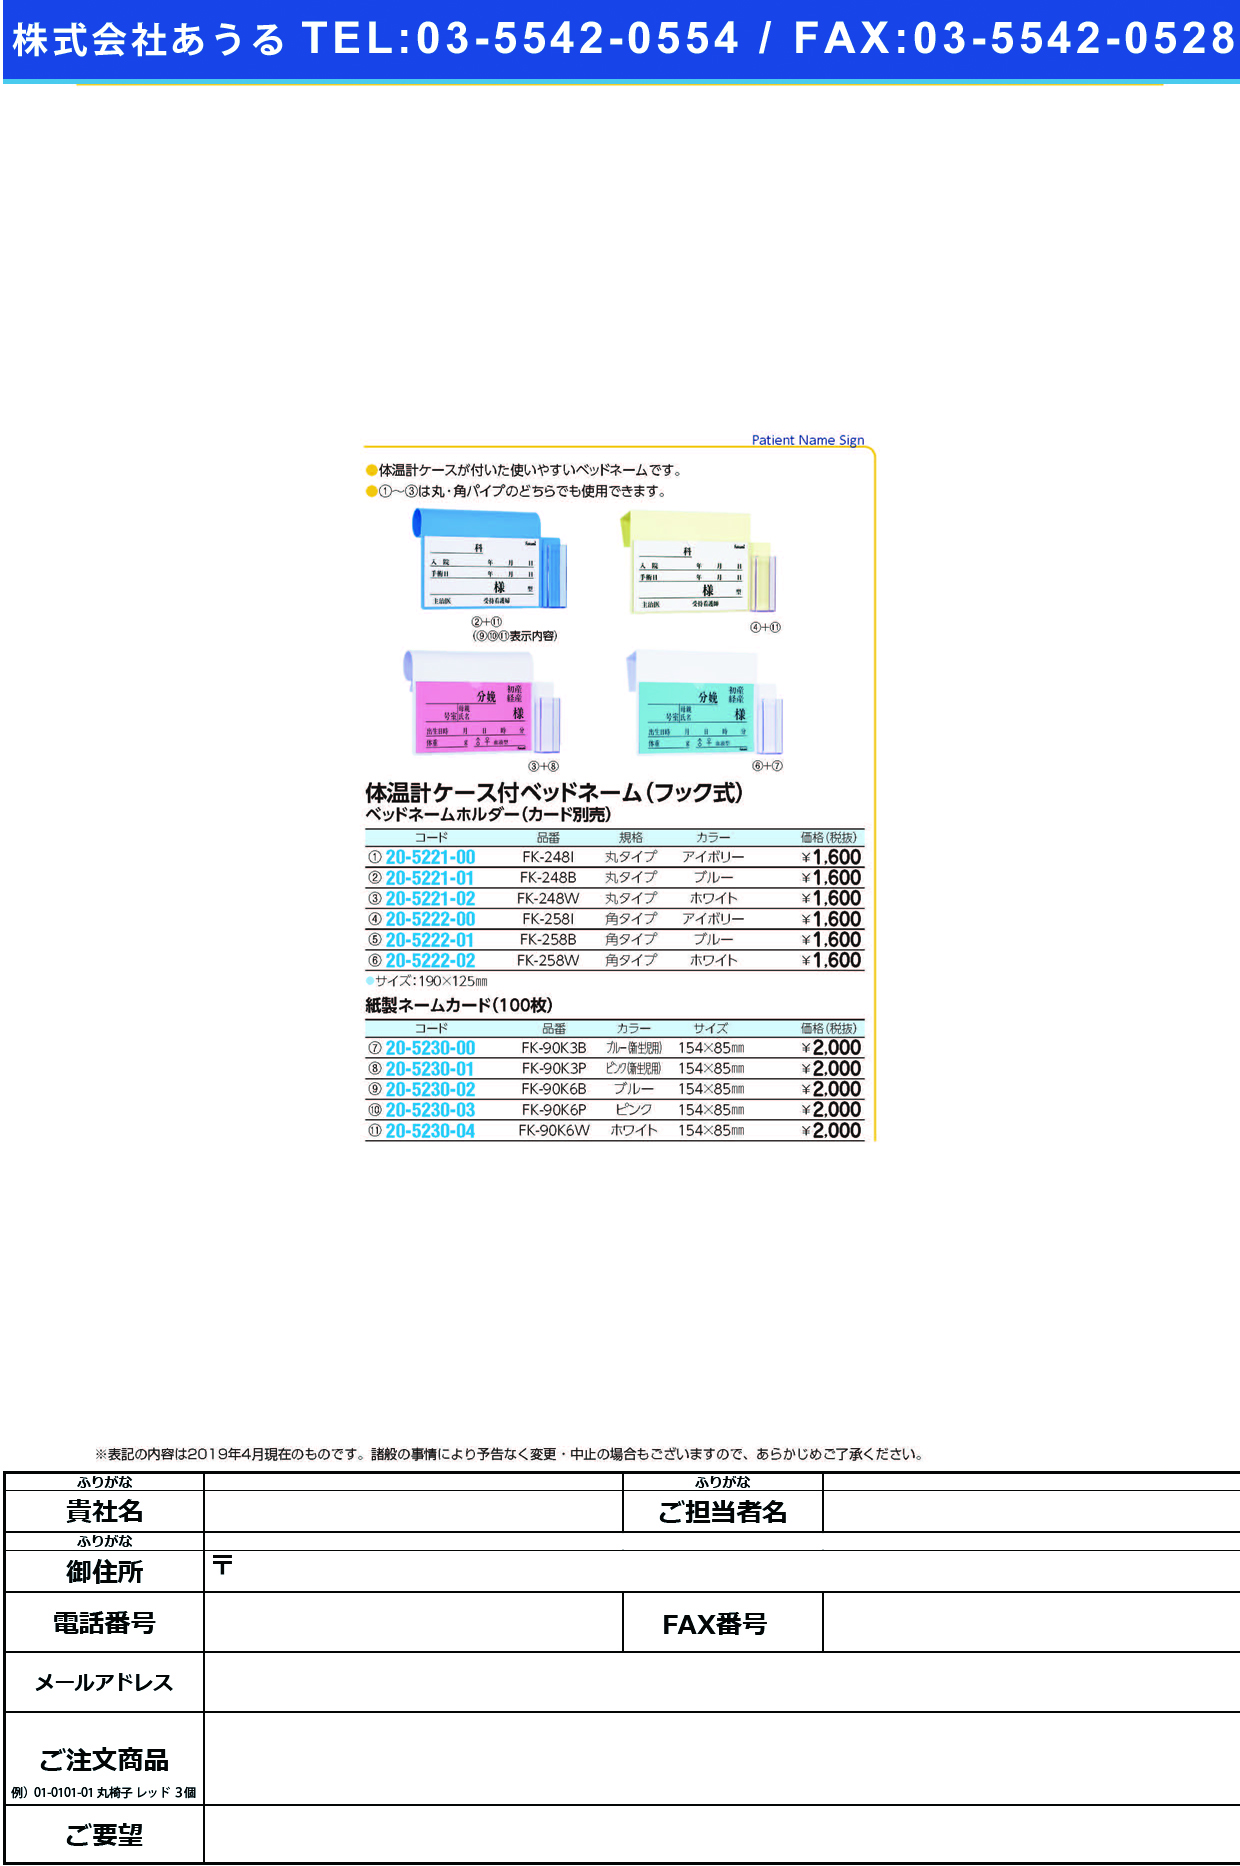 (20-5221-01)ベッドネームホルダー（体温計ケース付 FK-248B(ﾌｯｸｼｷ) ﾍﾞｯﾄﾞﾈｰﾑﾎﾙﾀﾞｰ【1個単位】【2019年カタログ商品】